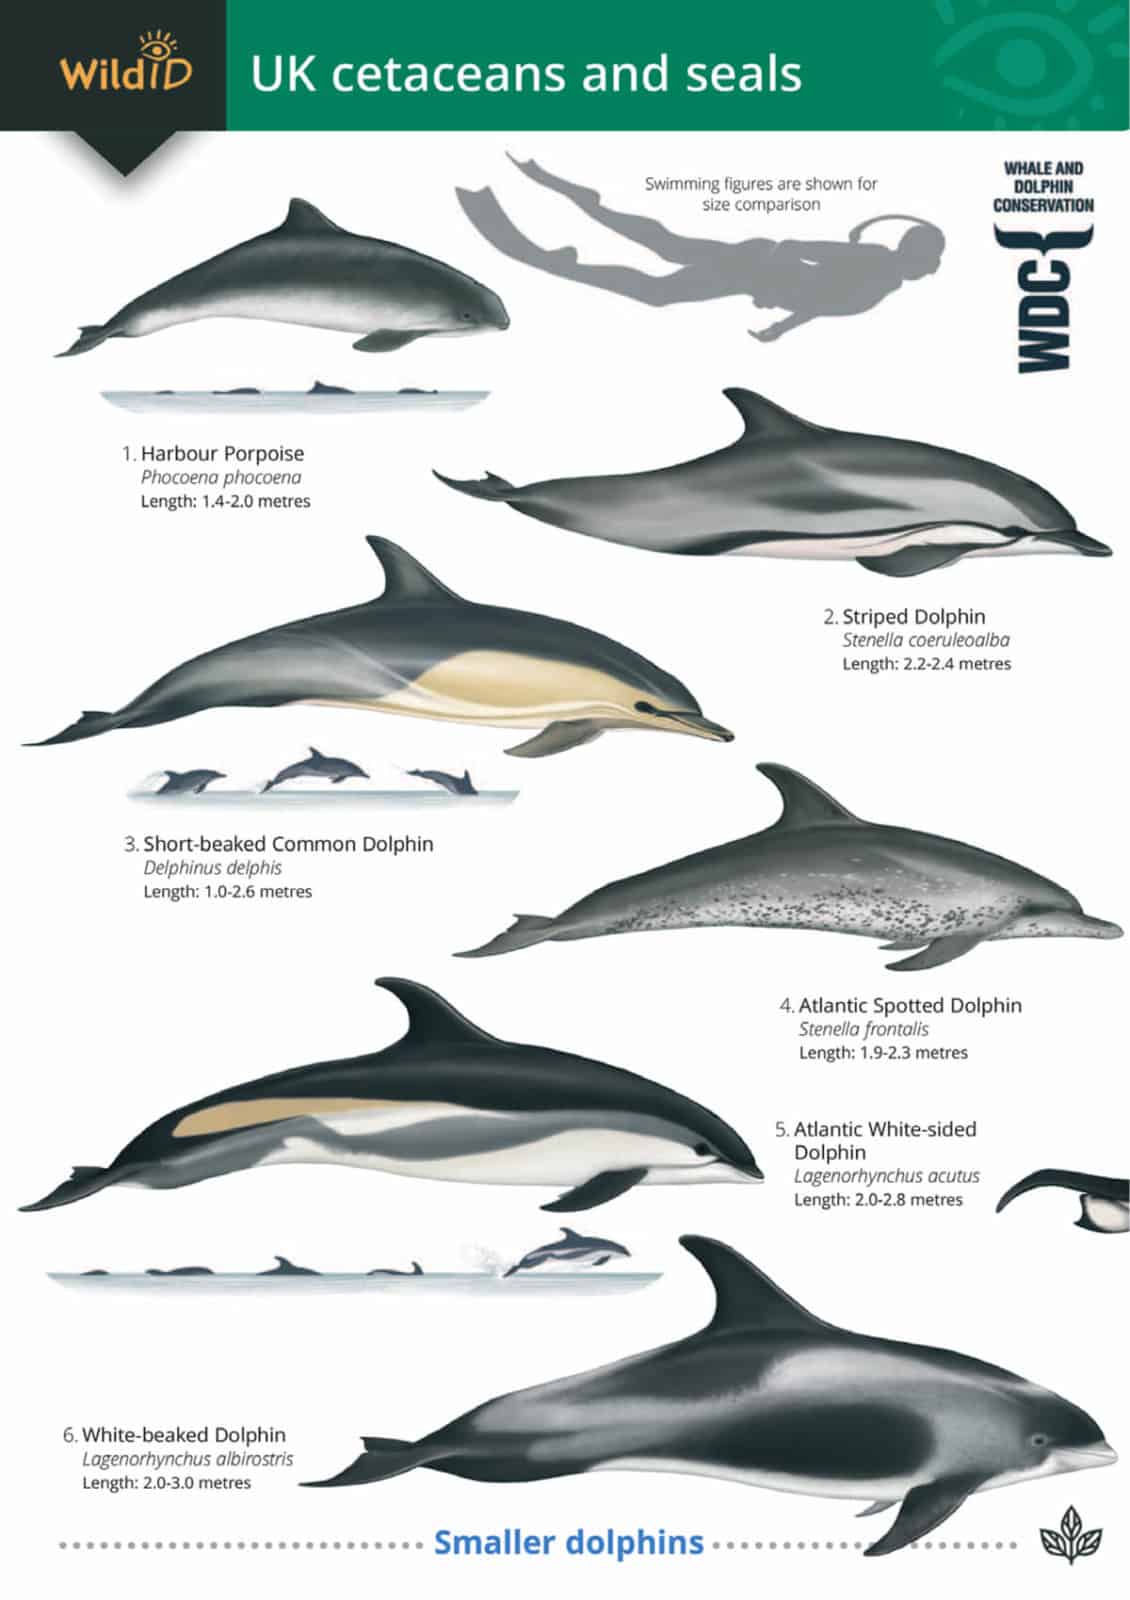 Cetaceans and seals